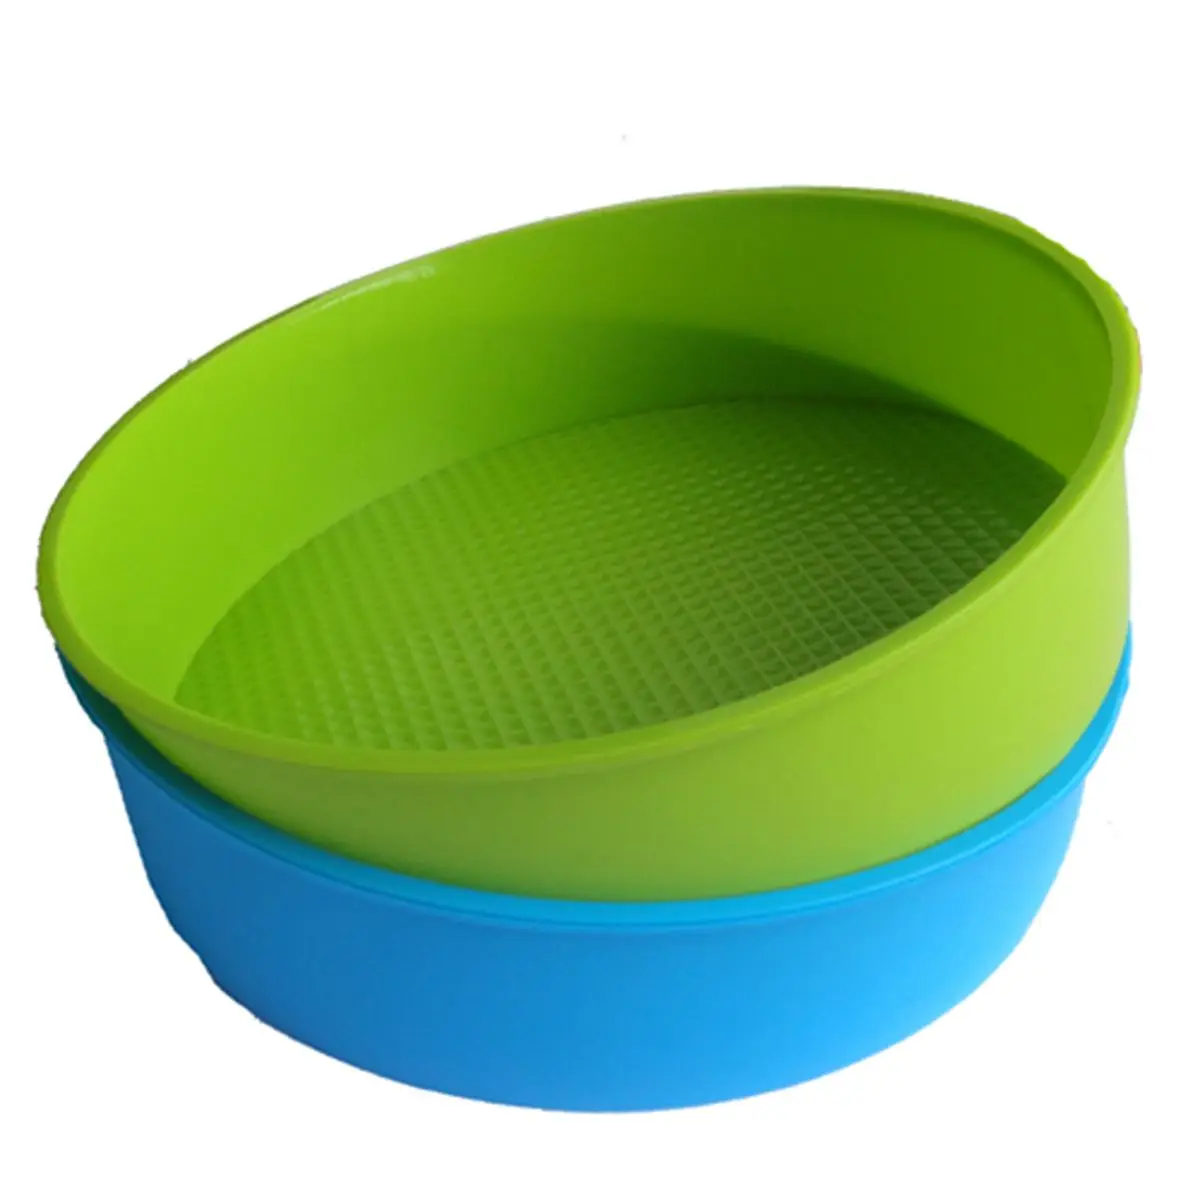 Лидер продаж Силиконовый формы для выпечки 26 см/10 дюймов круглый форма торта противень синий и зеленый цвета случайный